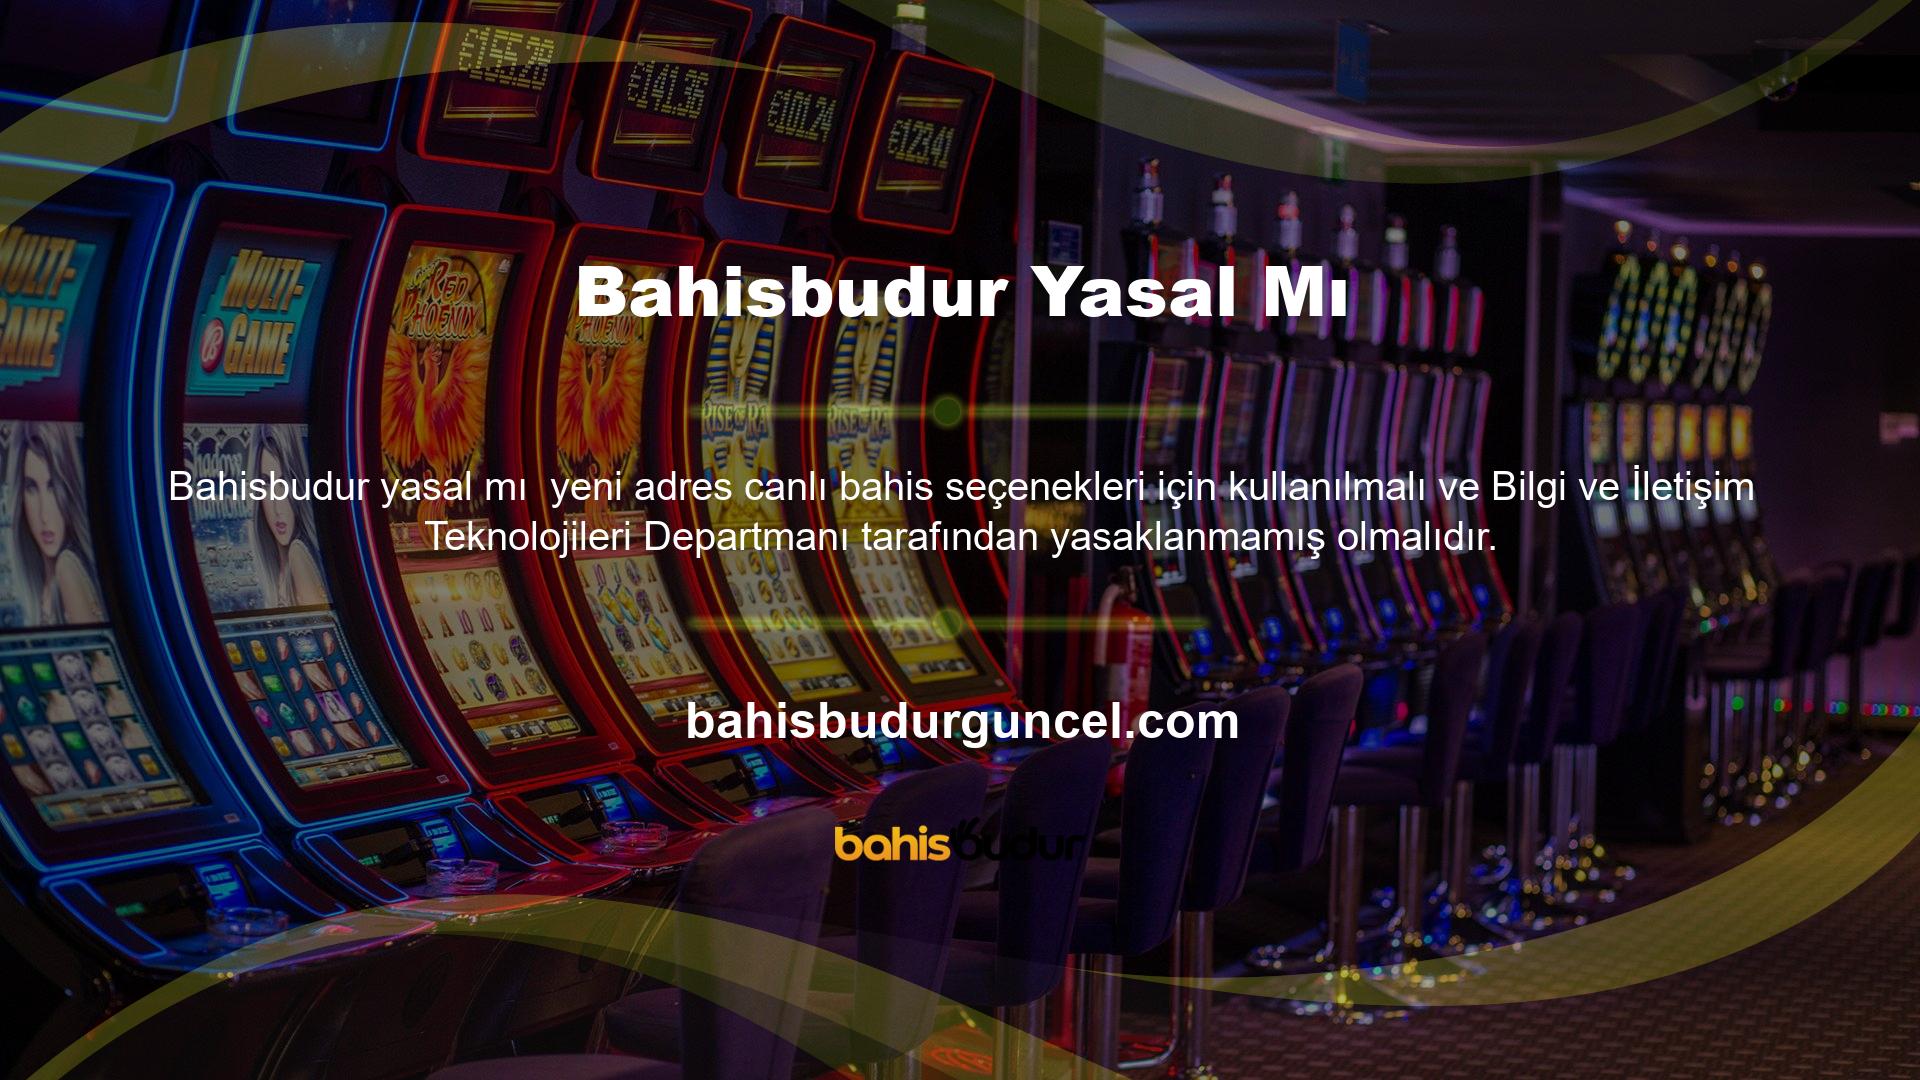 Şirket, Türkiye'de spor ve casino oyunlarının oynandığı eski kapalı adresinin yerine yeni bir alan adı satın aldı